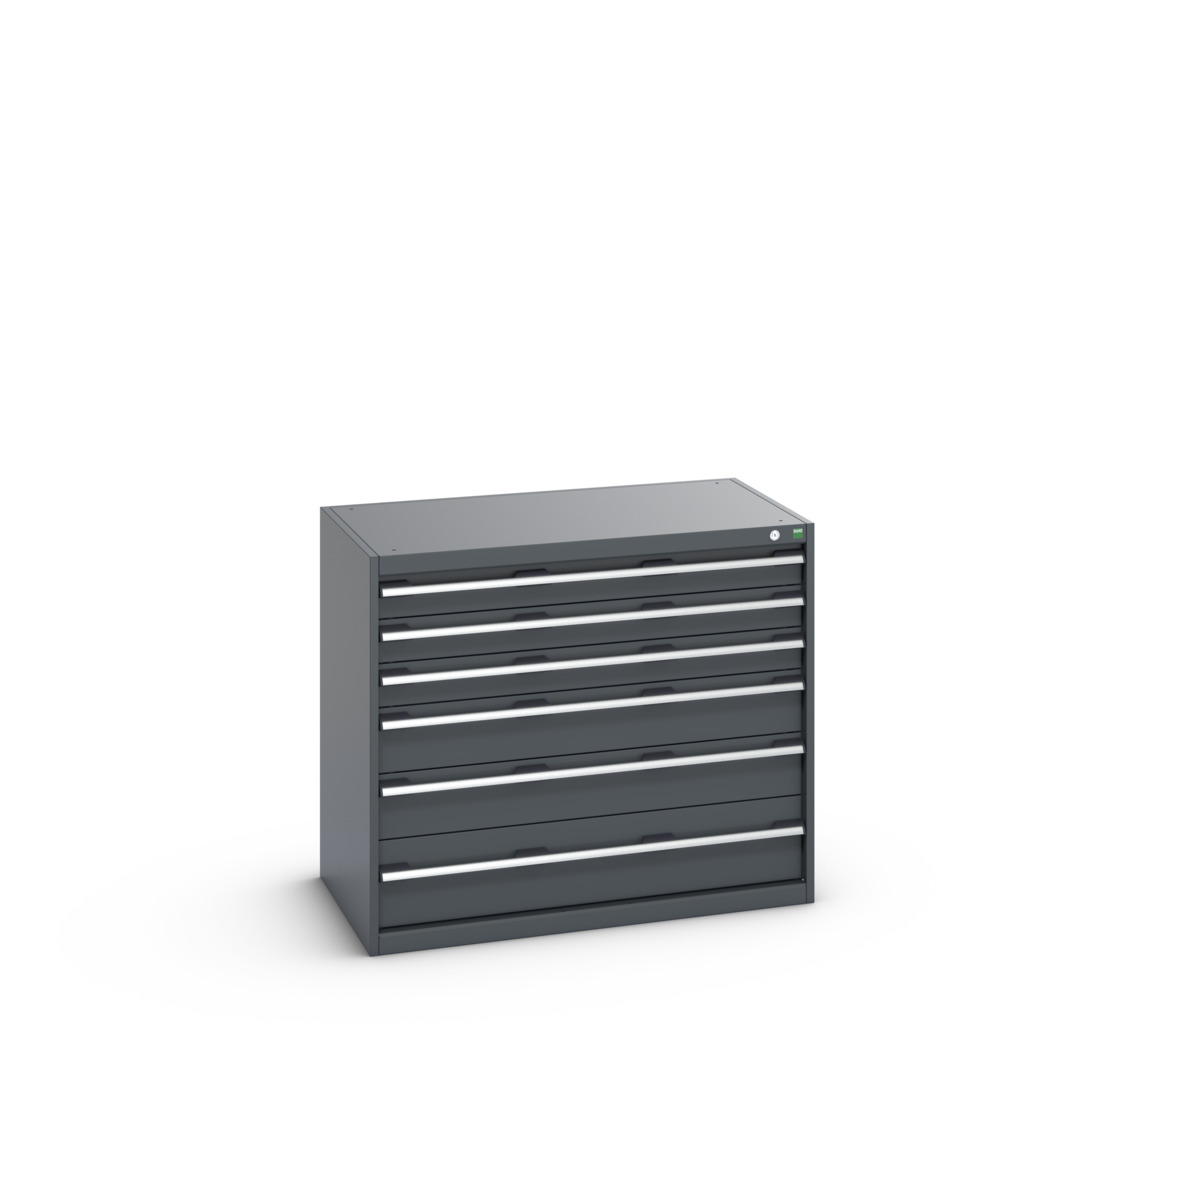 40021224.77V - cubio drawer cabinet